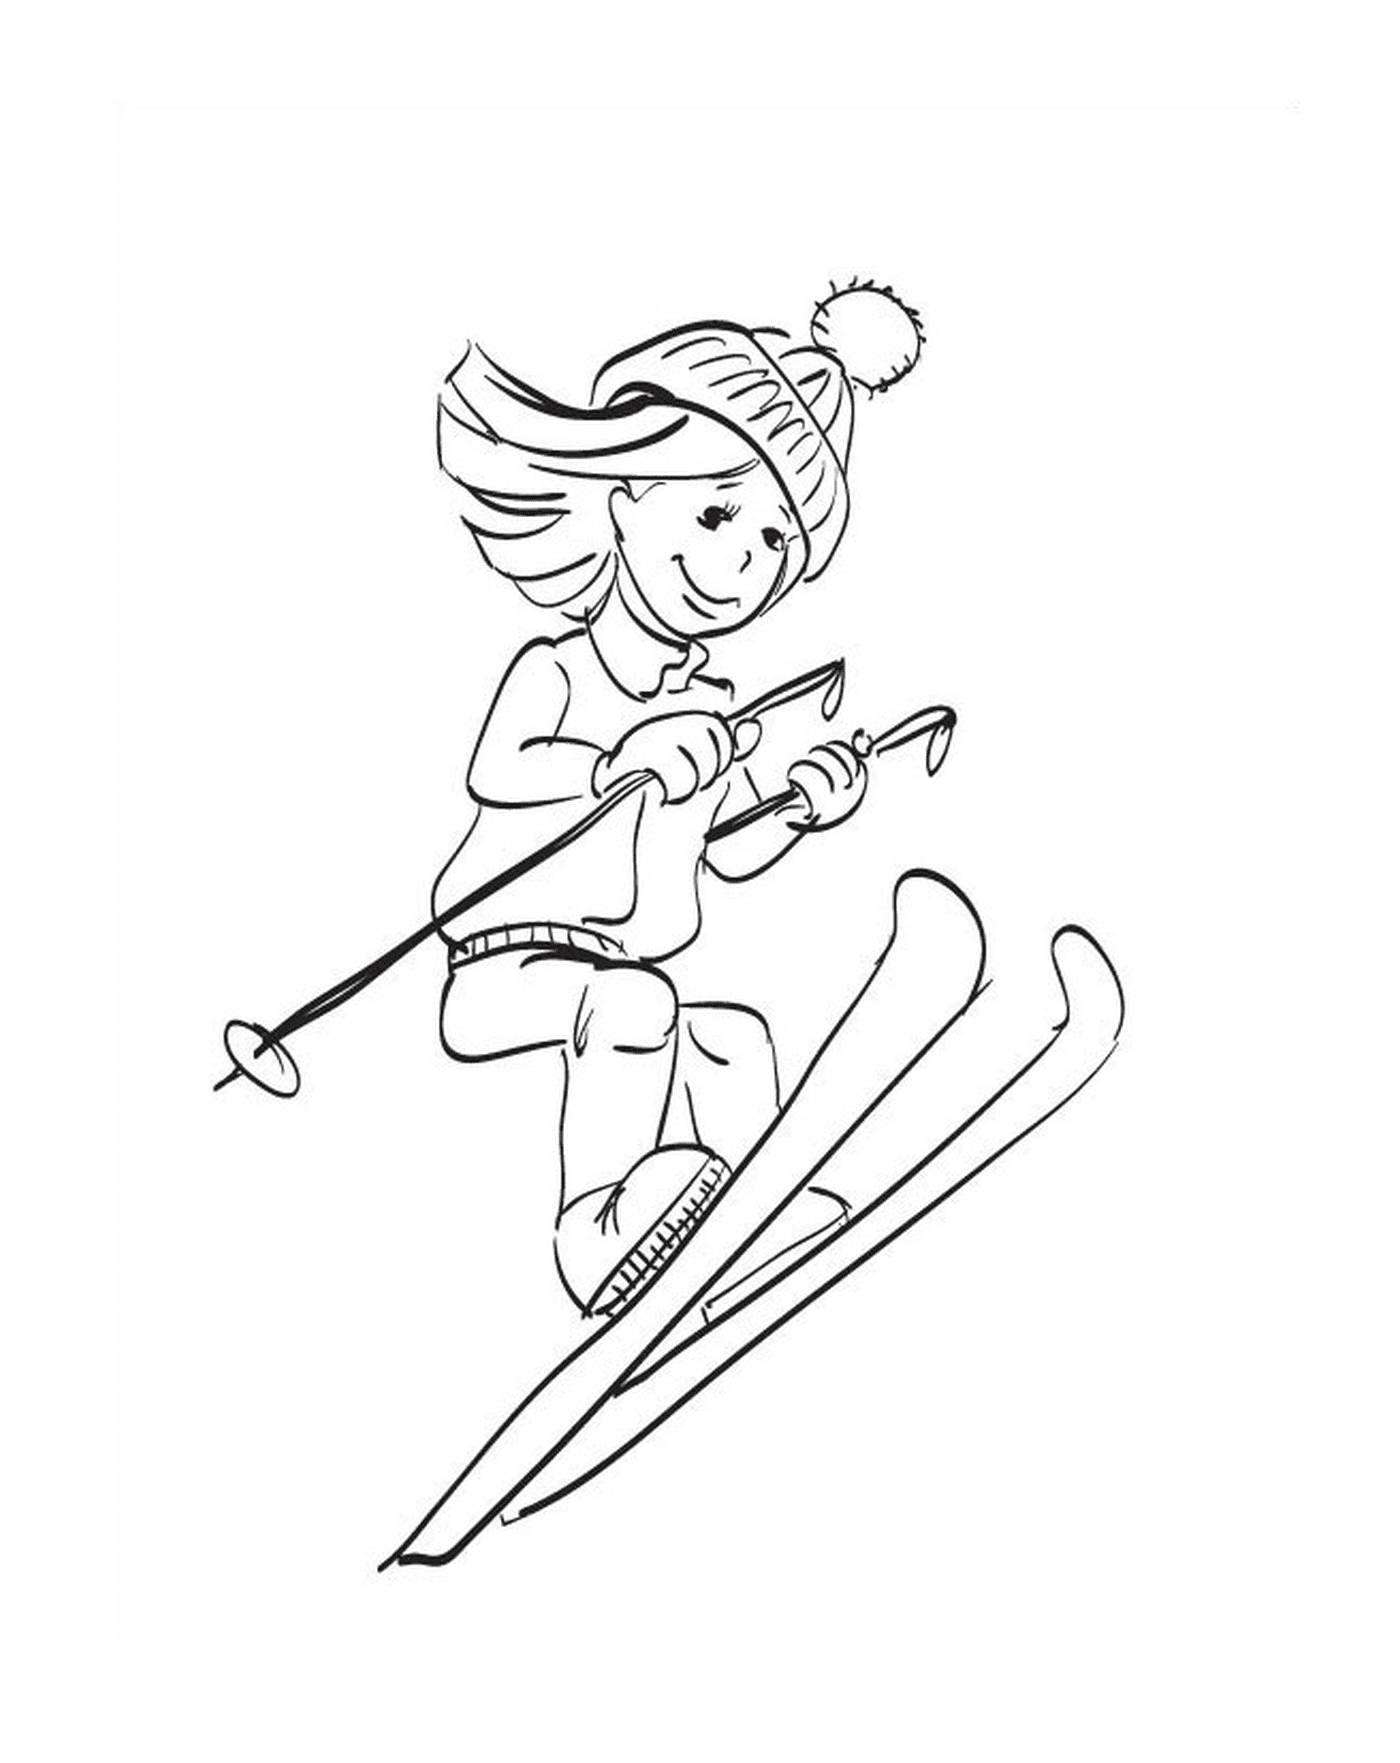  Deportes de invierno, esquí, chica bajando por una pendiente 